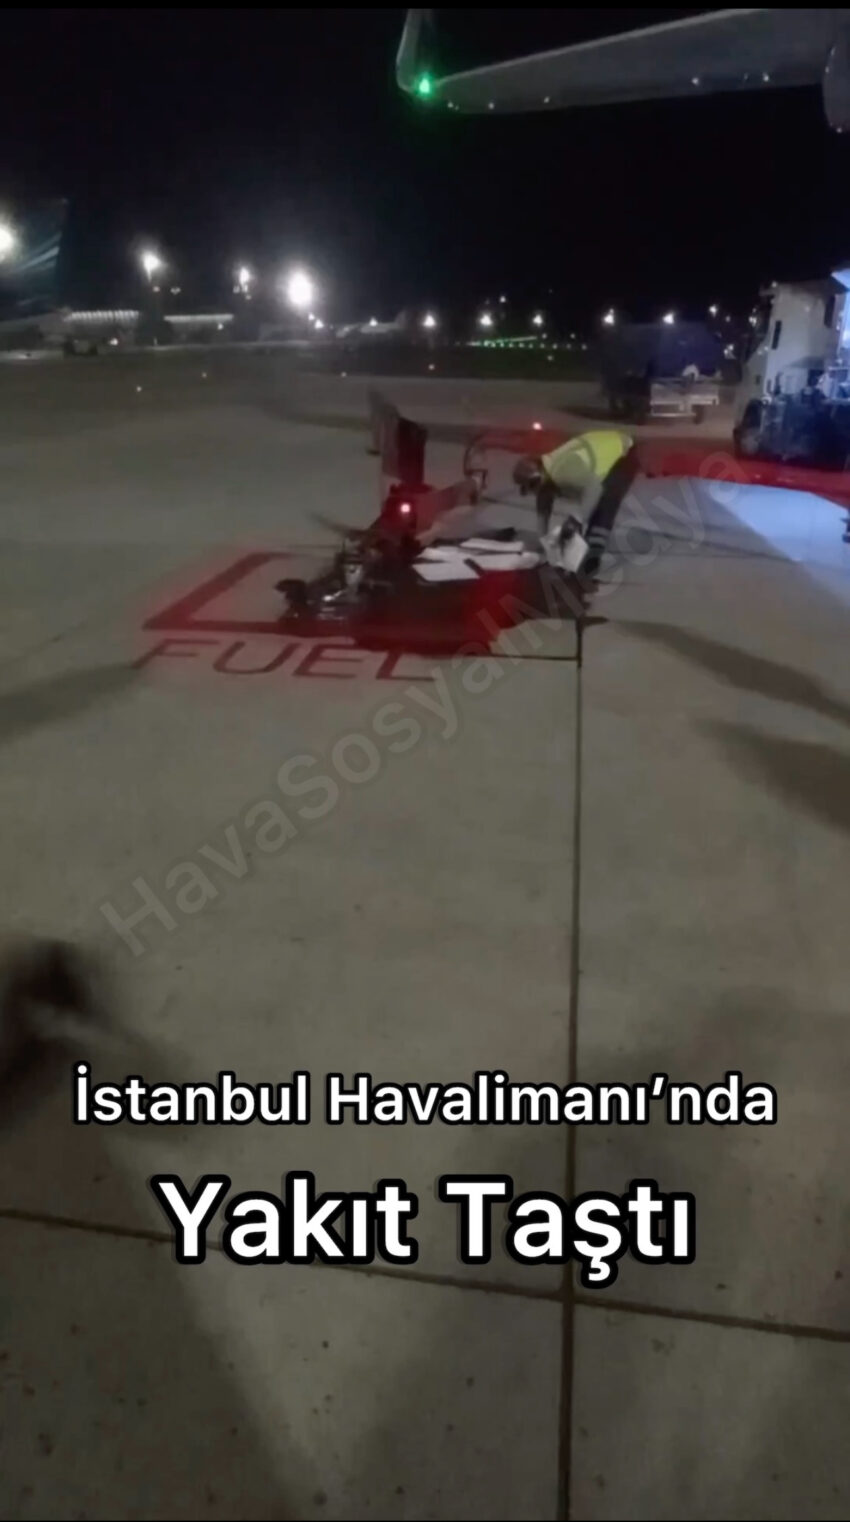 İstanbul Havalimanı’nda ikmal sırasında yakıt taştı #HSMözel